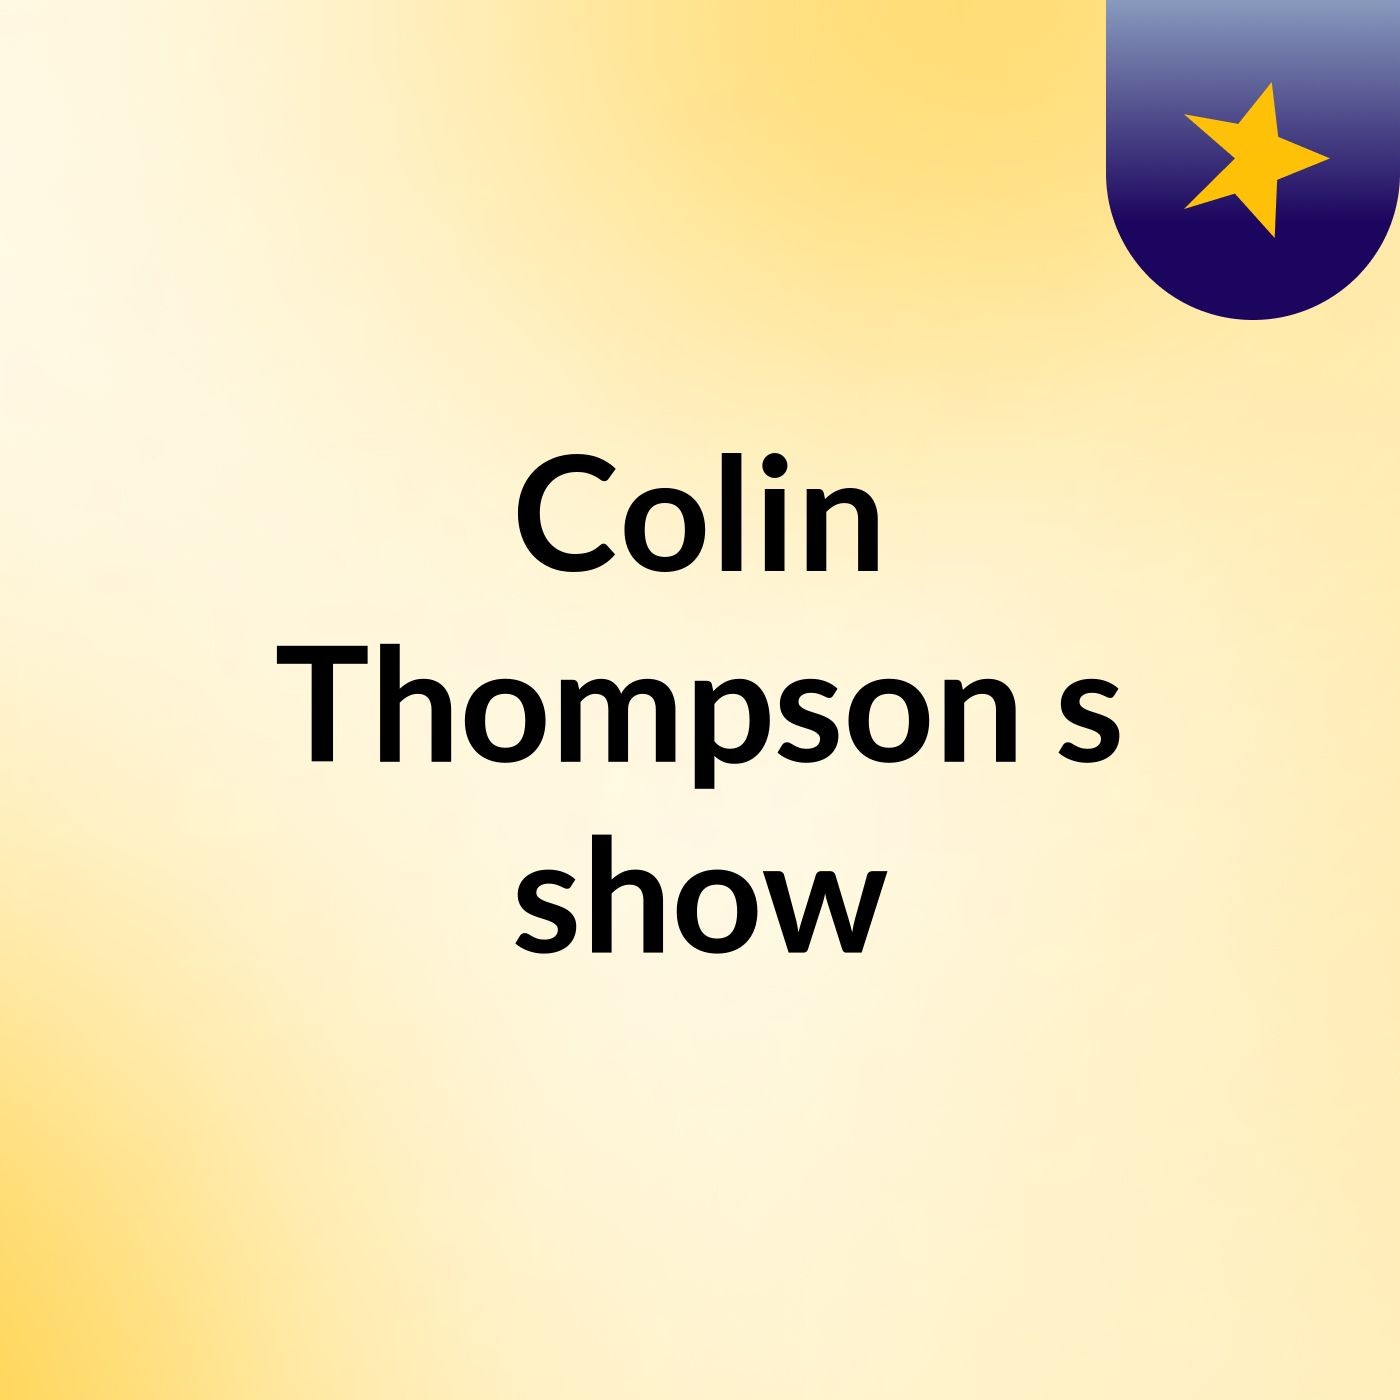 Colin Thompson's show